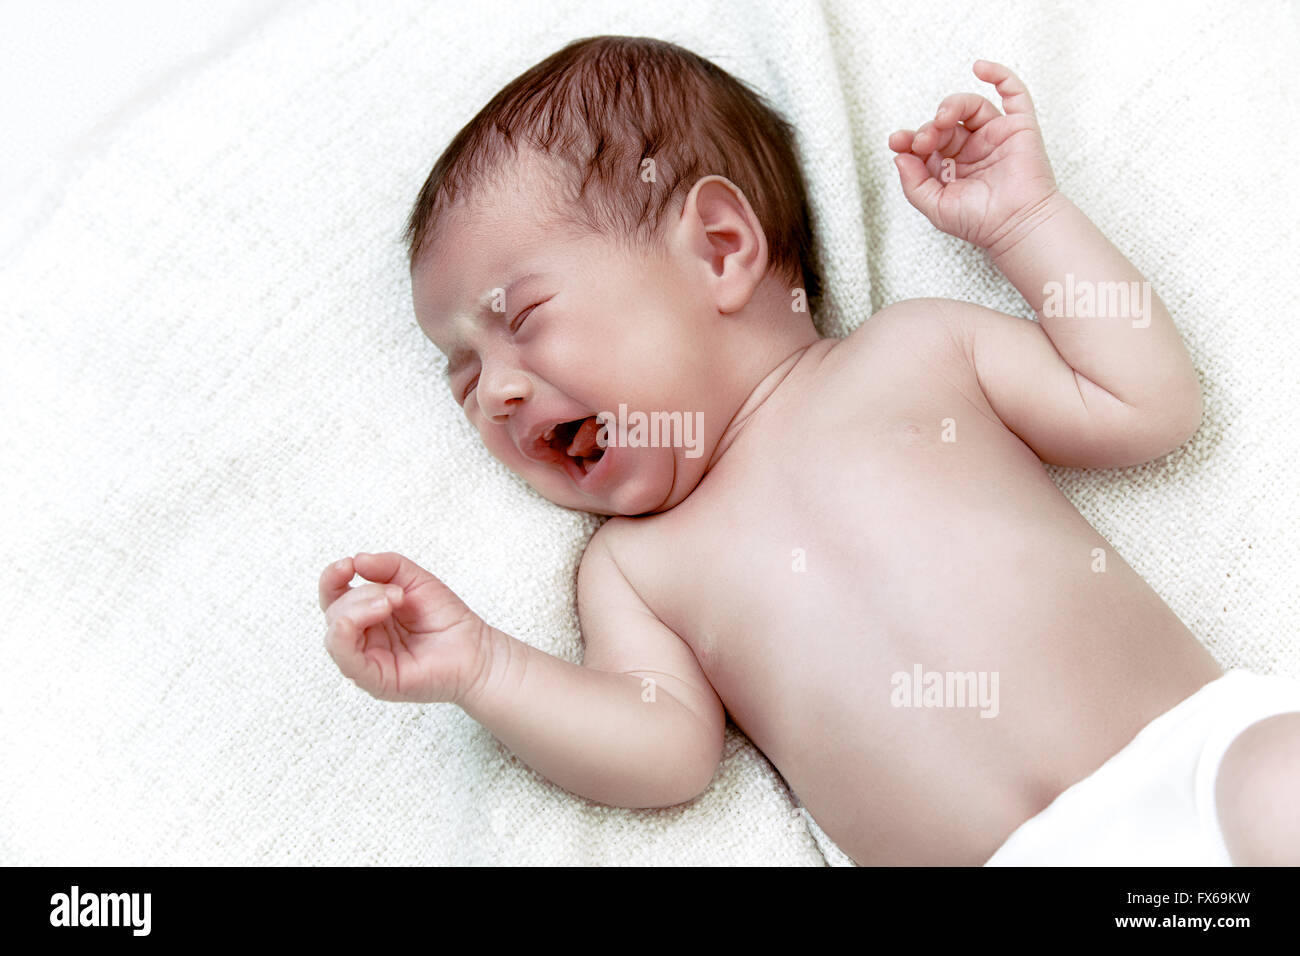 Newborn baby crying in white bad Stock Photo